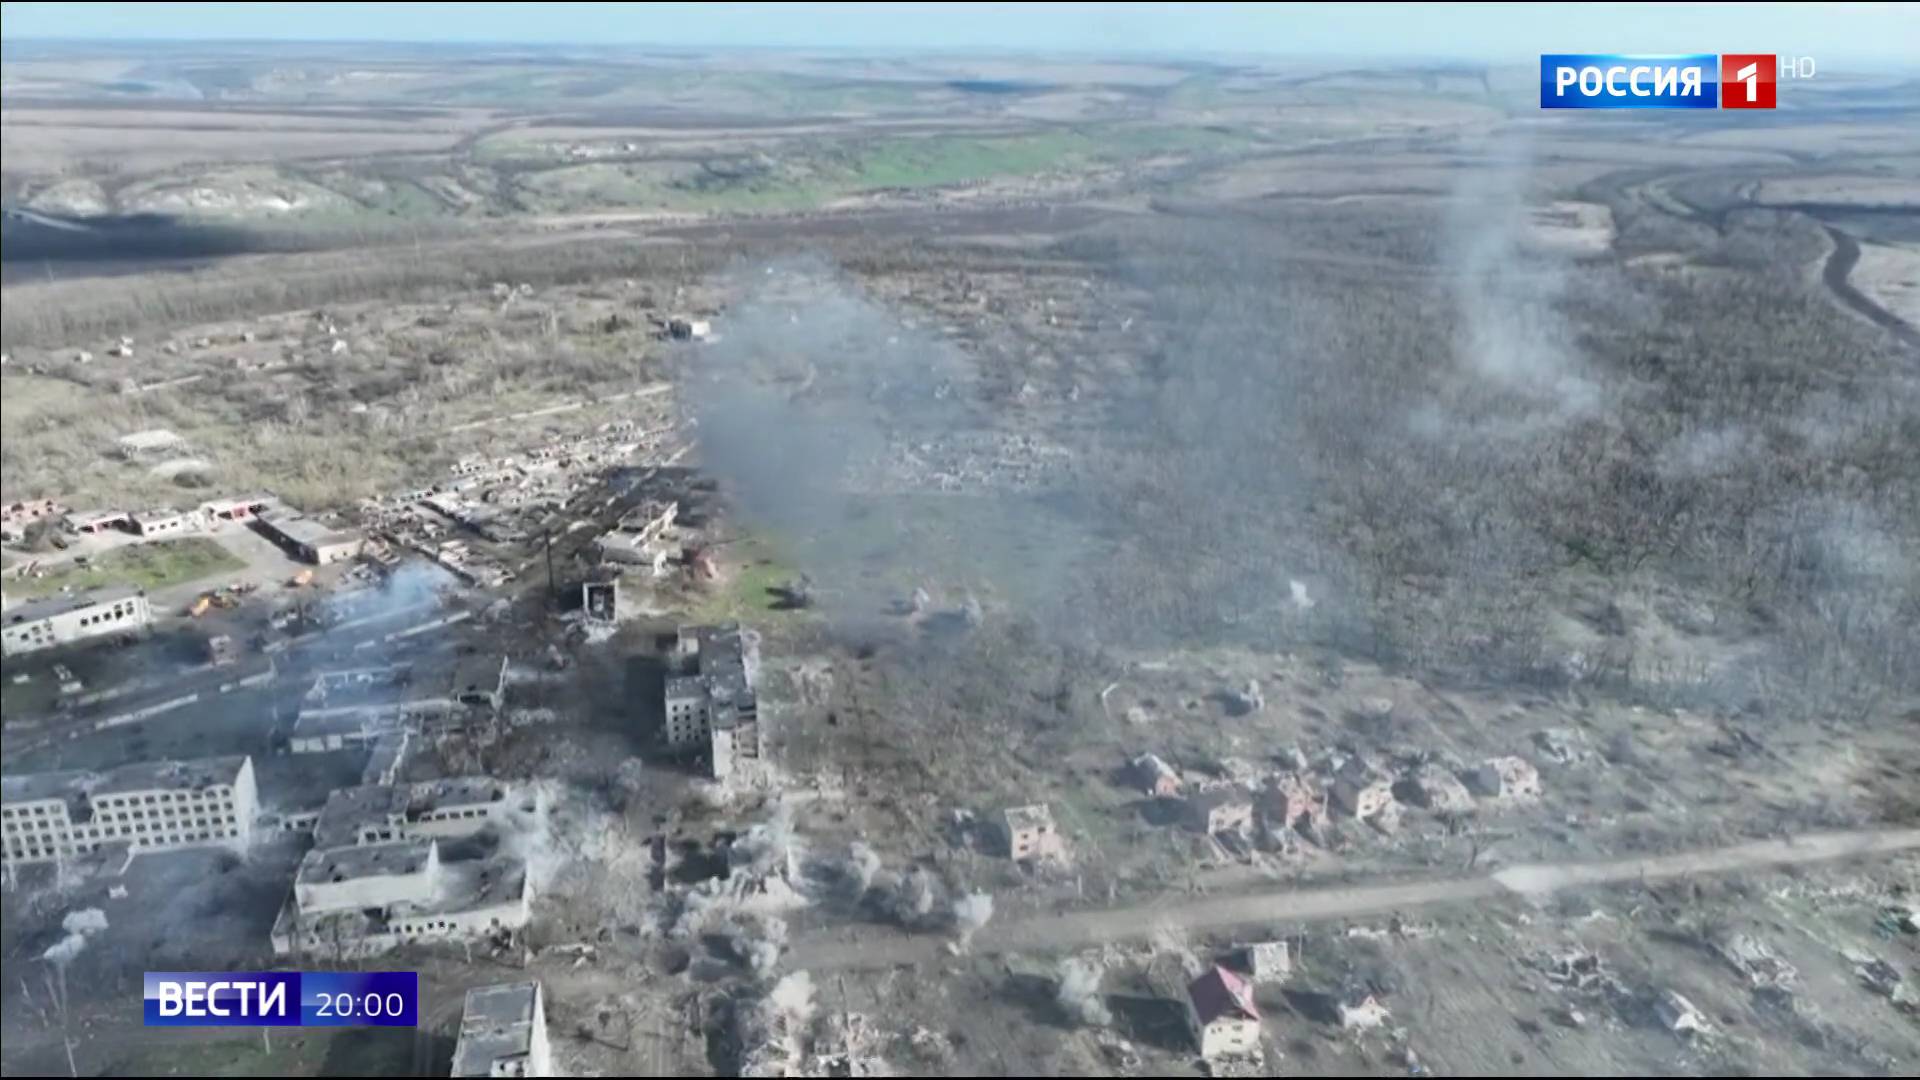 Widok z lotu ptaka osiedla zniszczonego ostrzałem